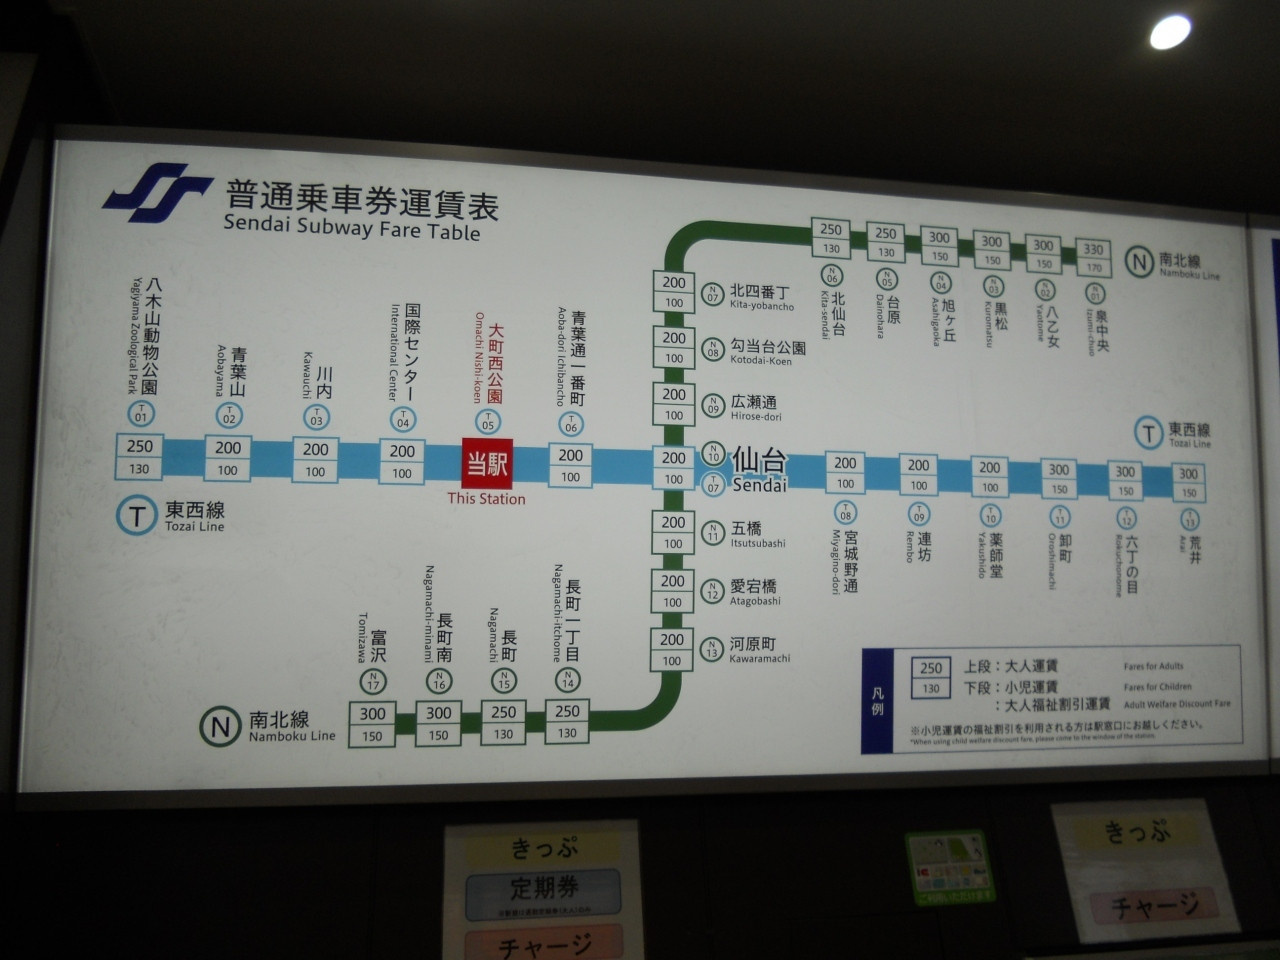 仙台都心と周辺エリアのアクセスがより便利に！仙台地下鉄東西線754883